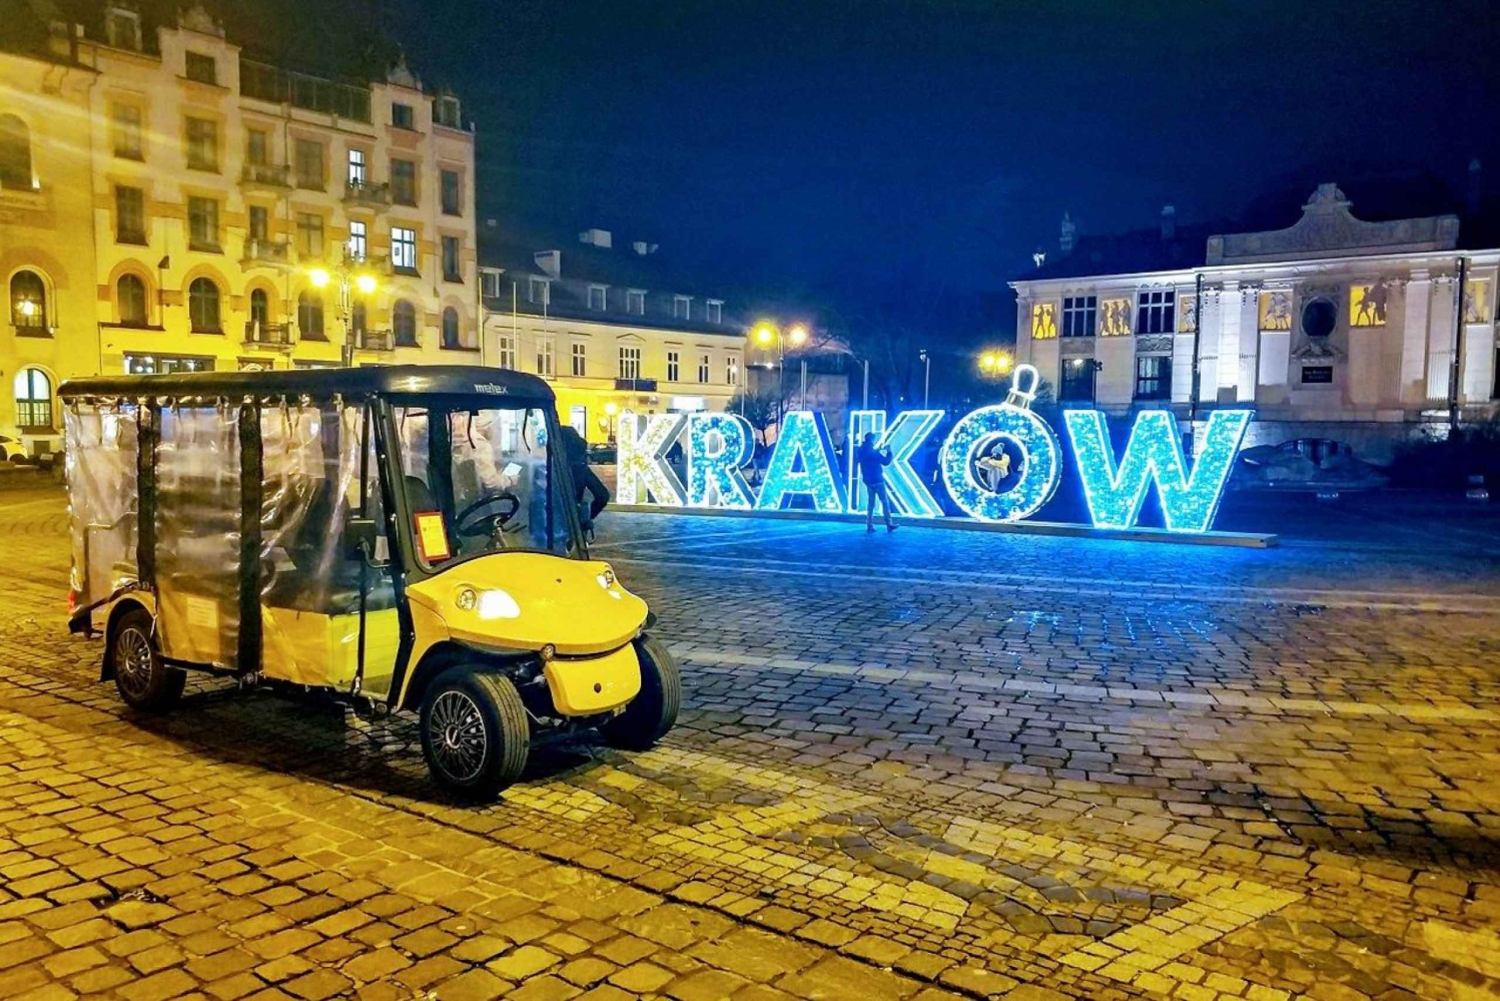 Kraków: Stare Miasto wózkiem golfowym, Wawel i Kopalnia Soli w Wieliczce